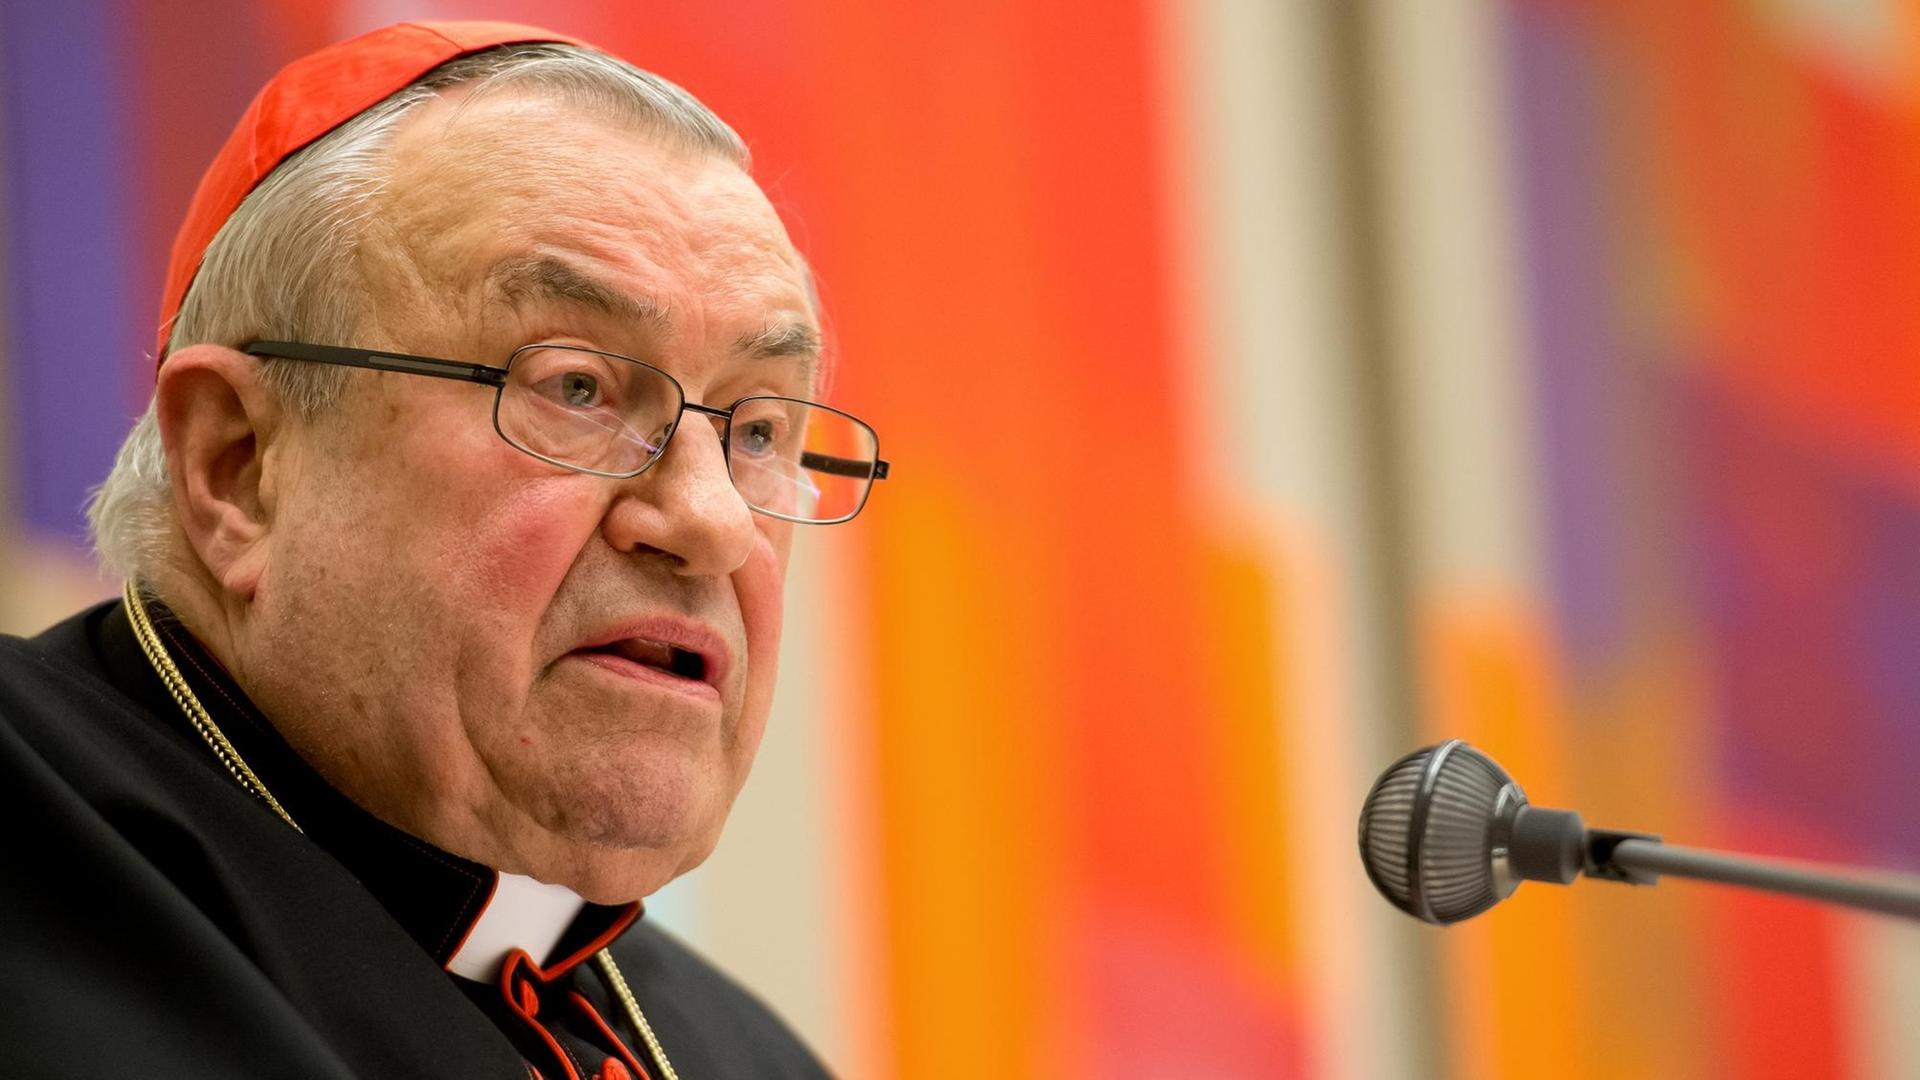 Der Mainzer Kardinal Karl Lehmann spricht am 28.10.2014 in München (Bayern) bei der Verleihung des Romano Guardini Preises.